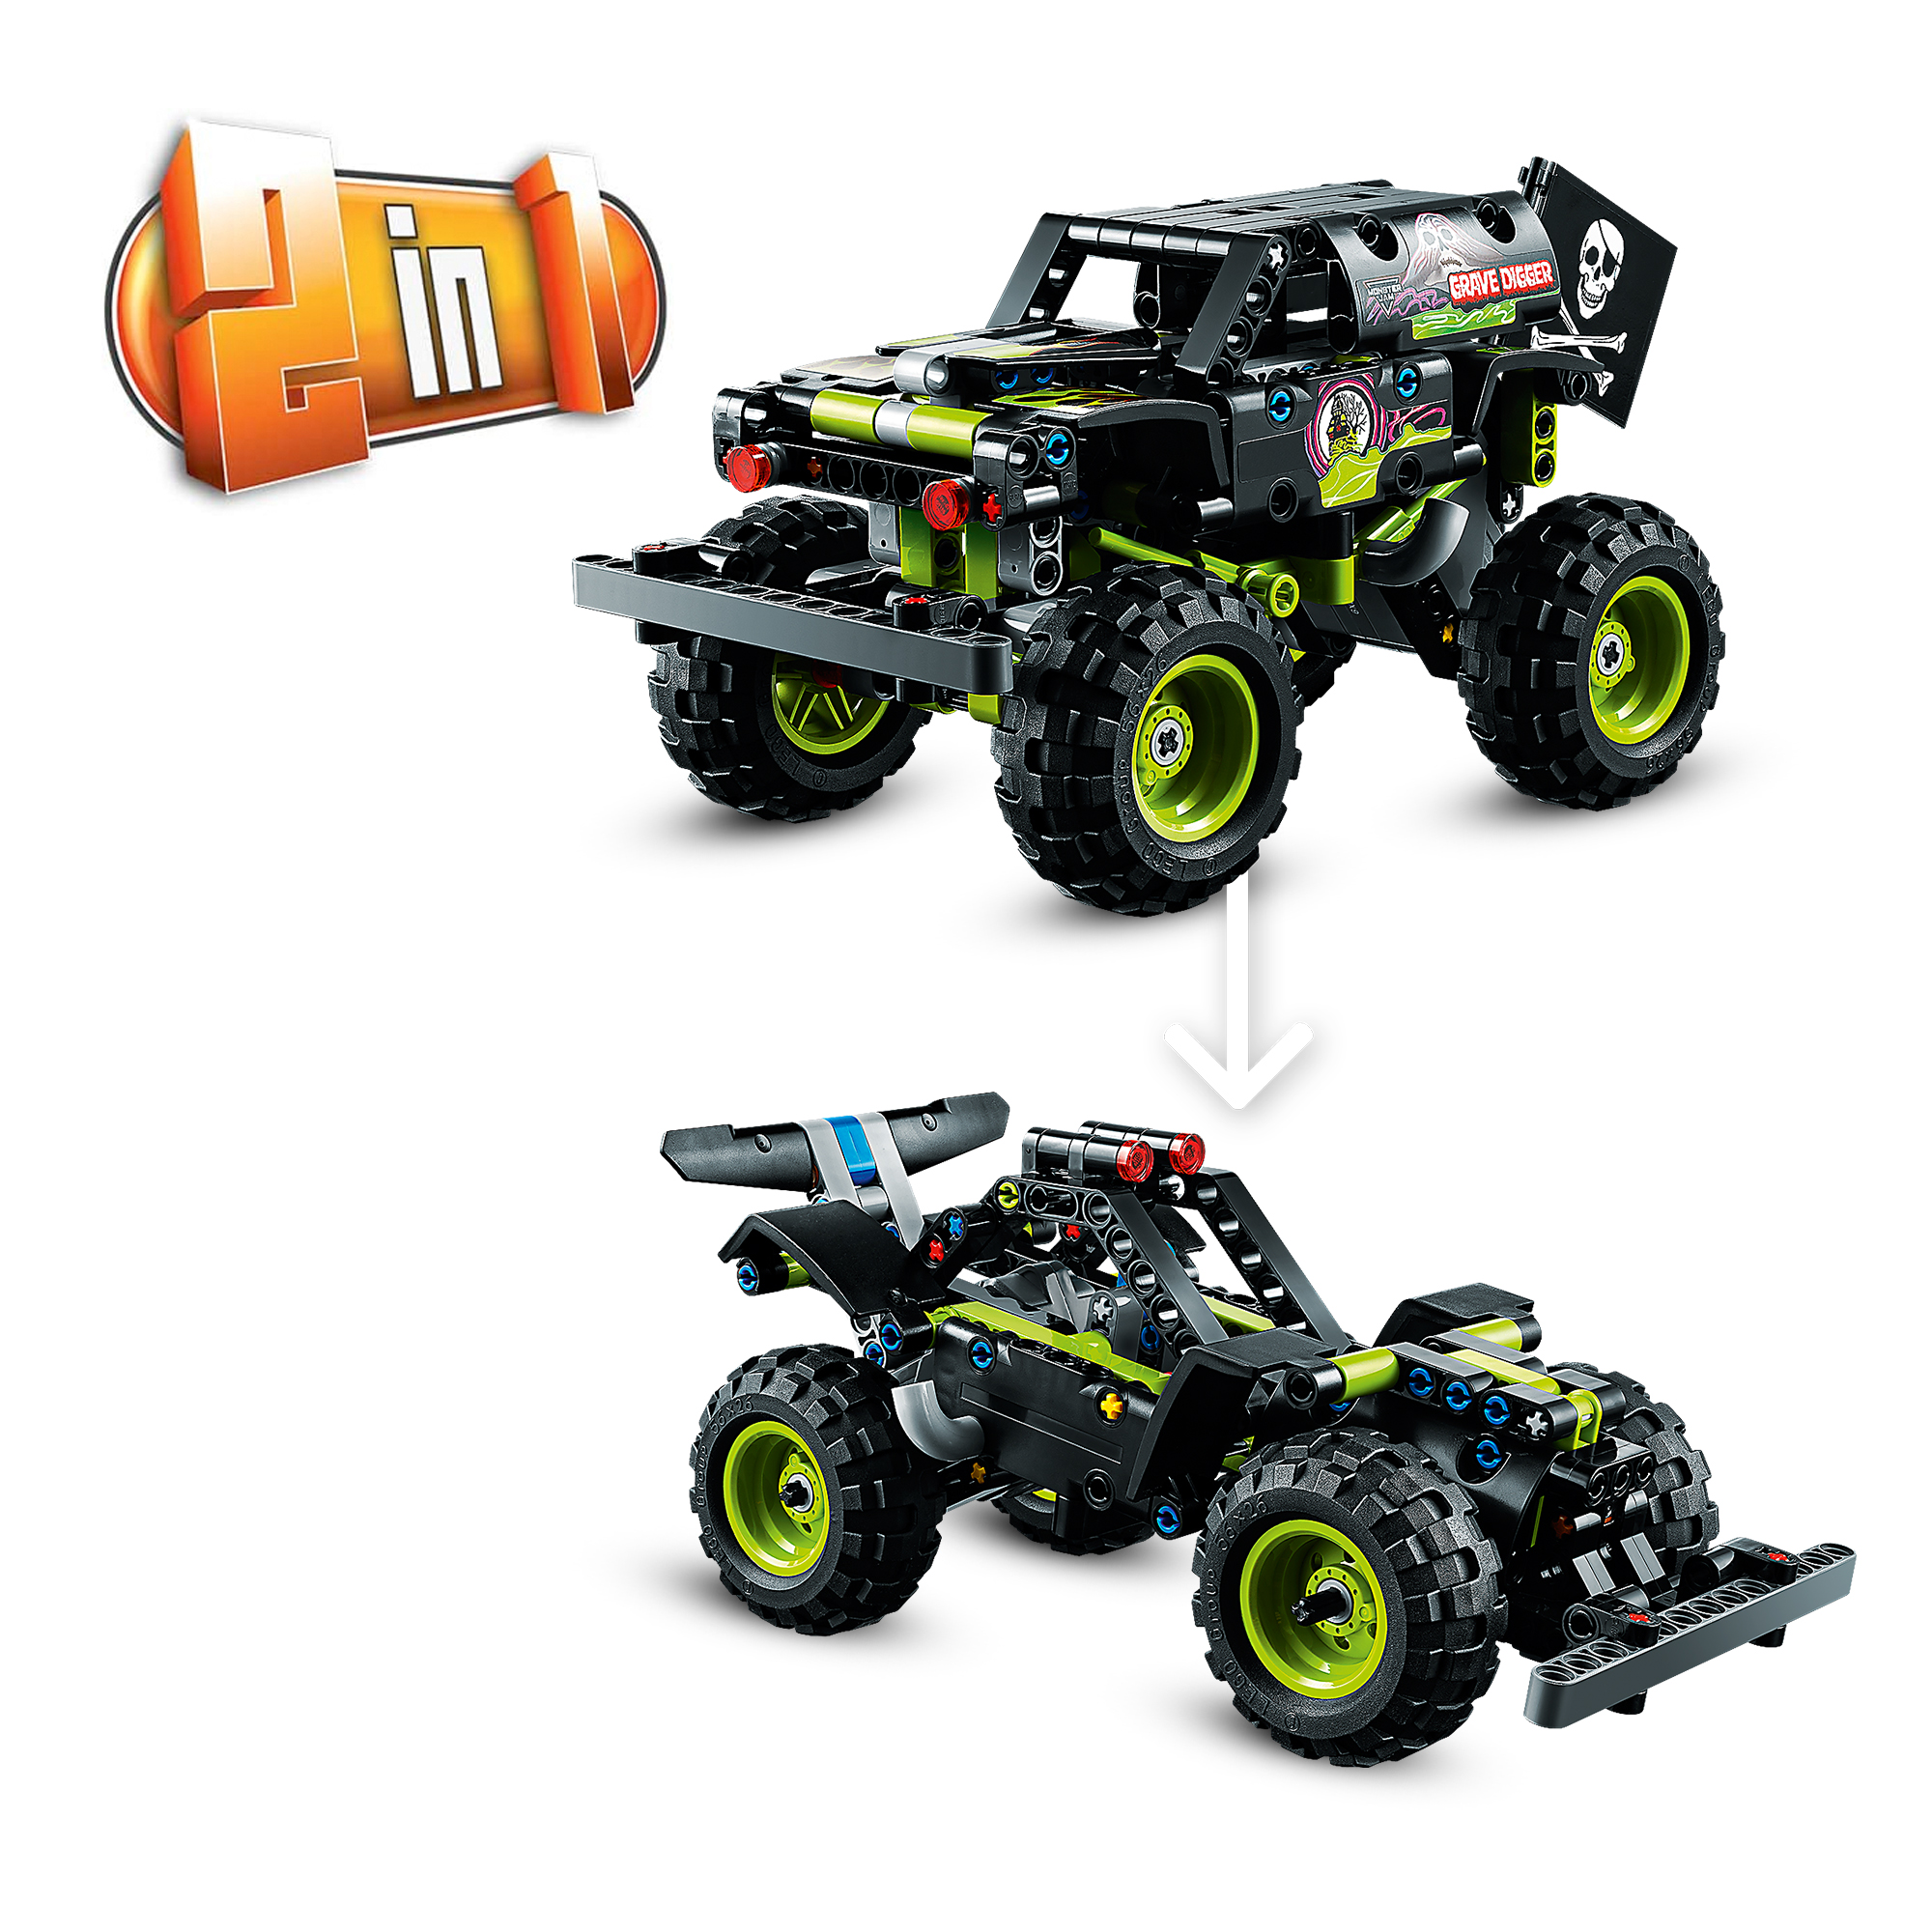 Lego technic 42118 monster jam grave digger, kit 2 in 1 da truck a buggy fuoristrada con azione pull-back, giochi per bambini - LEGO TECHNIC, Lego